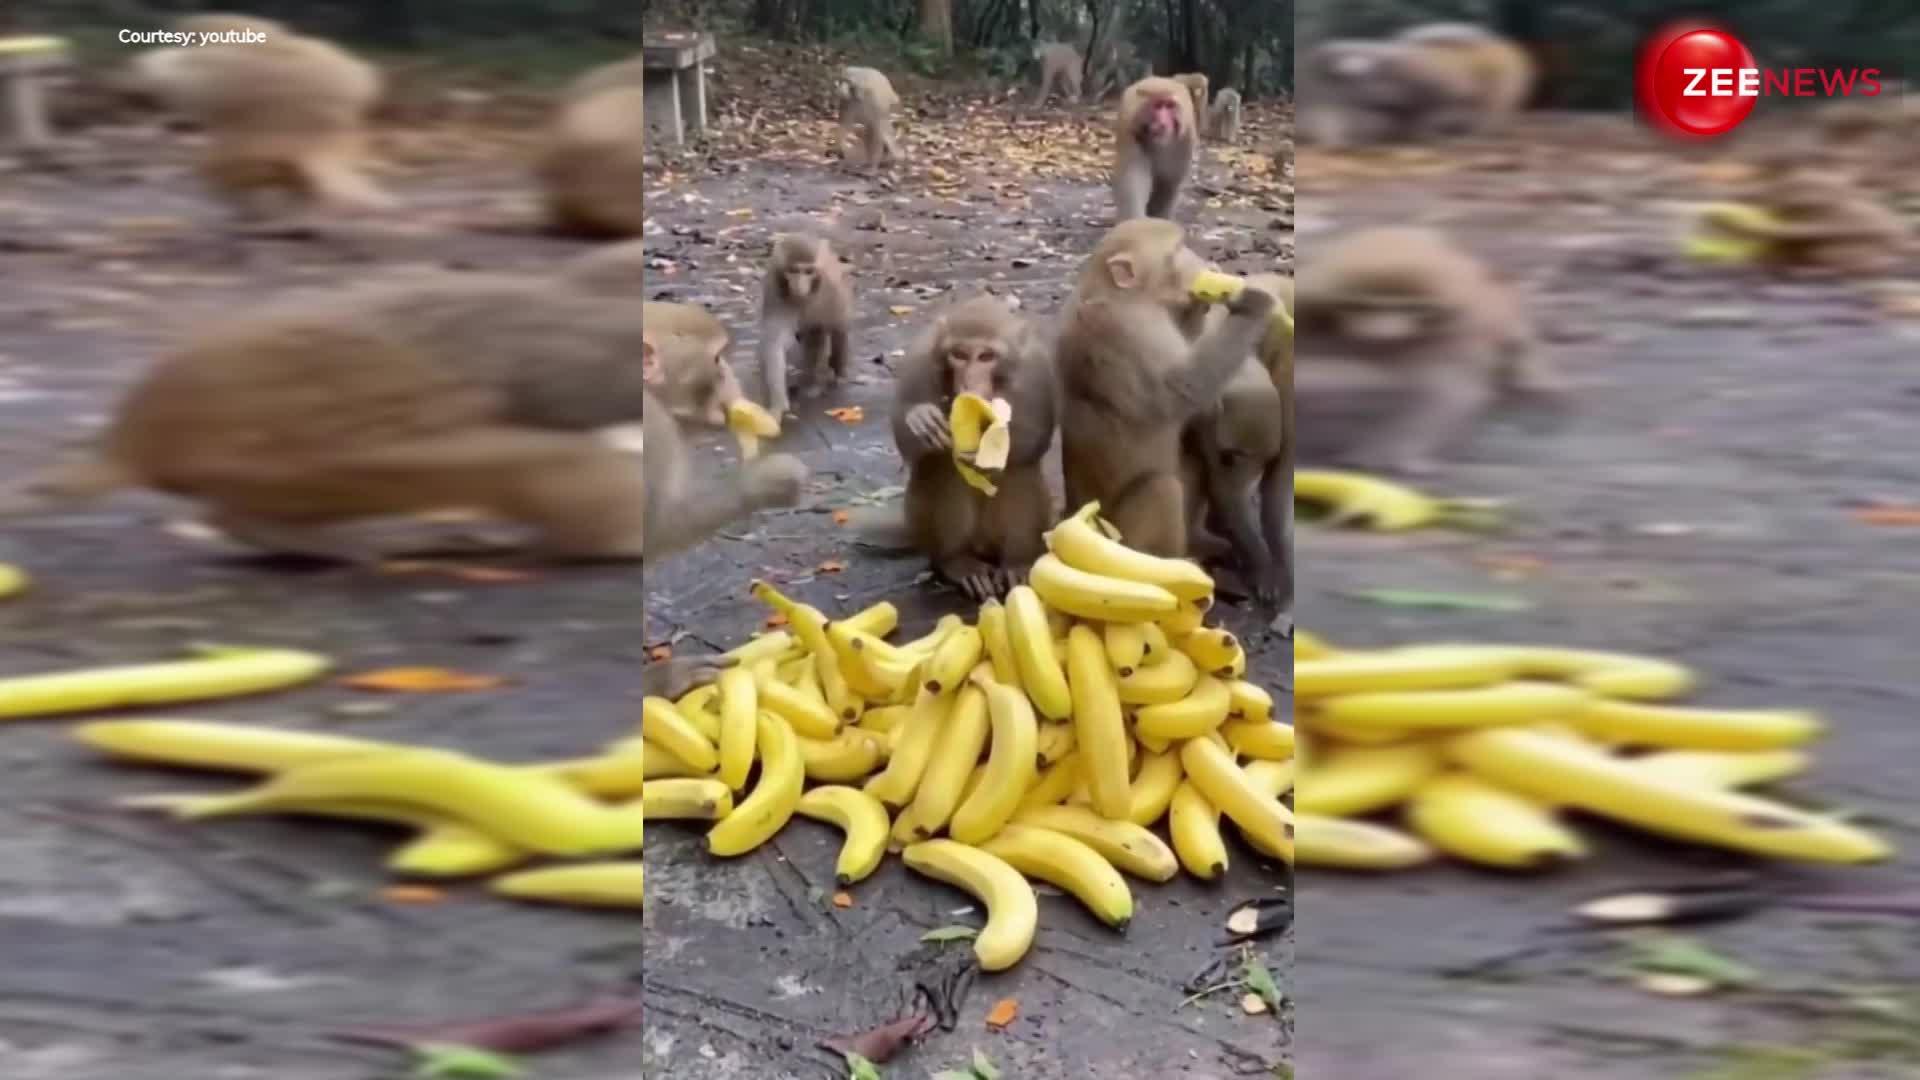 Monkey fight video: केले का ढेर देखते ही पगला गया बंदरों का झुंड, दो मिनट में खा डाले सारे केले